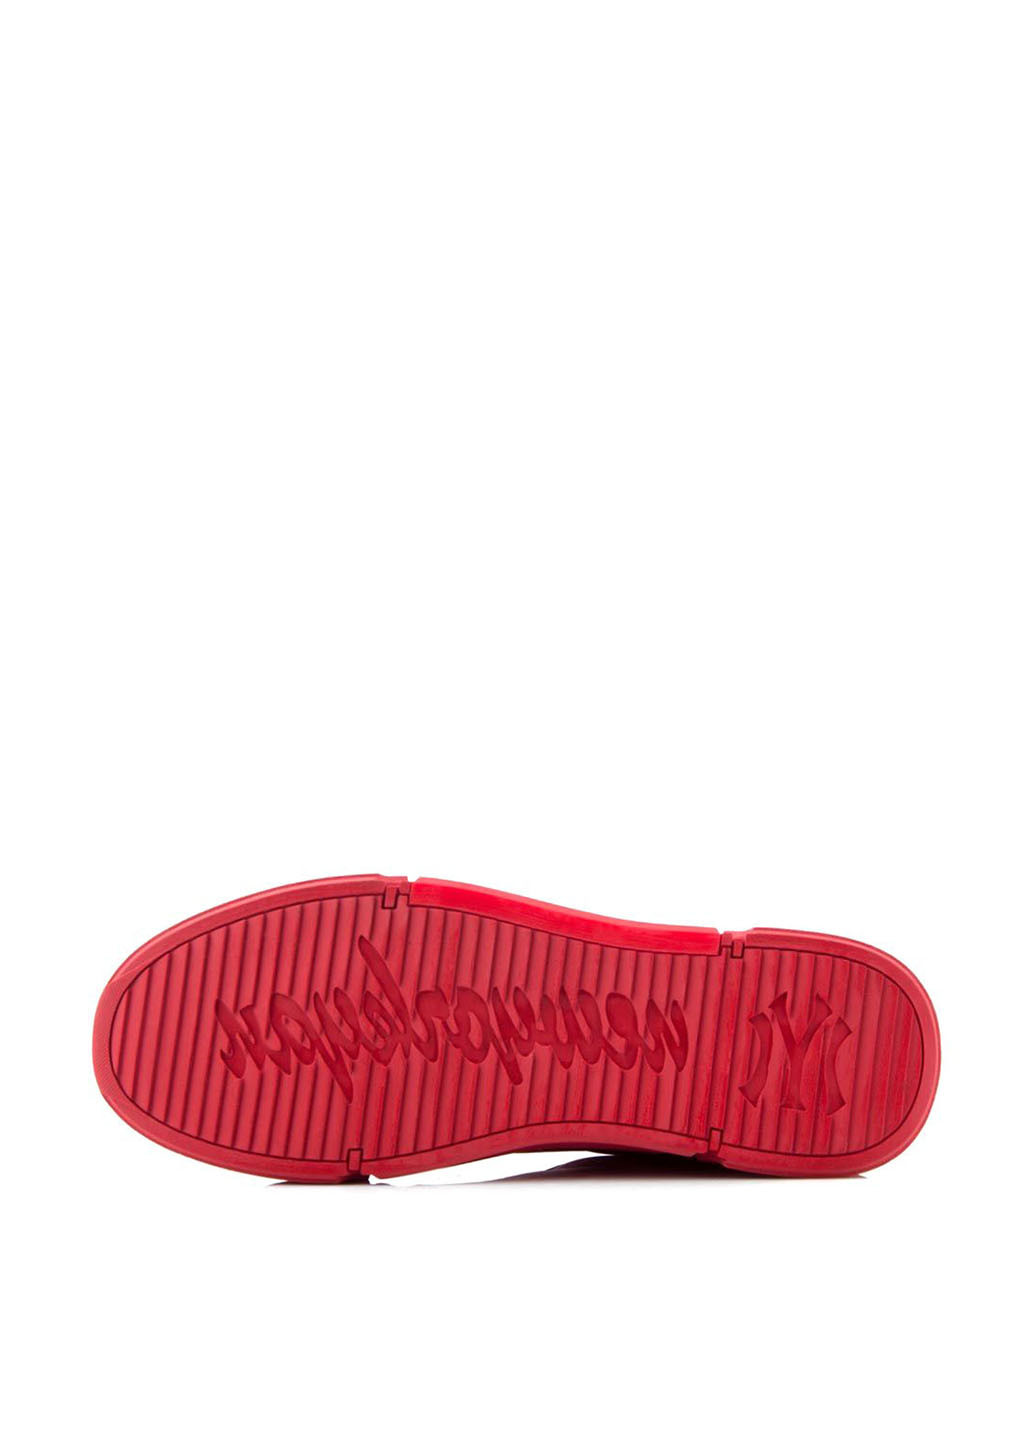 Красные спортивные туфли Tomfrie без шнурков